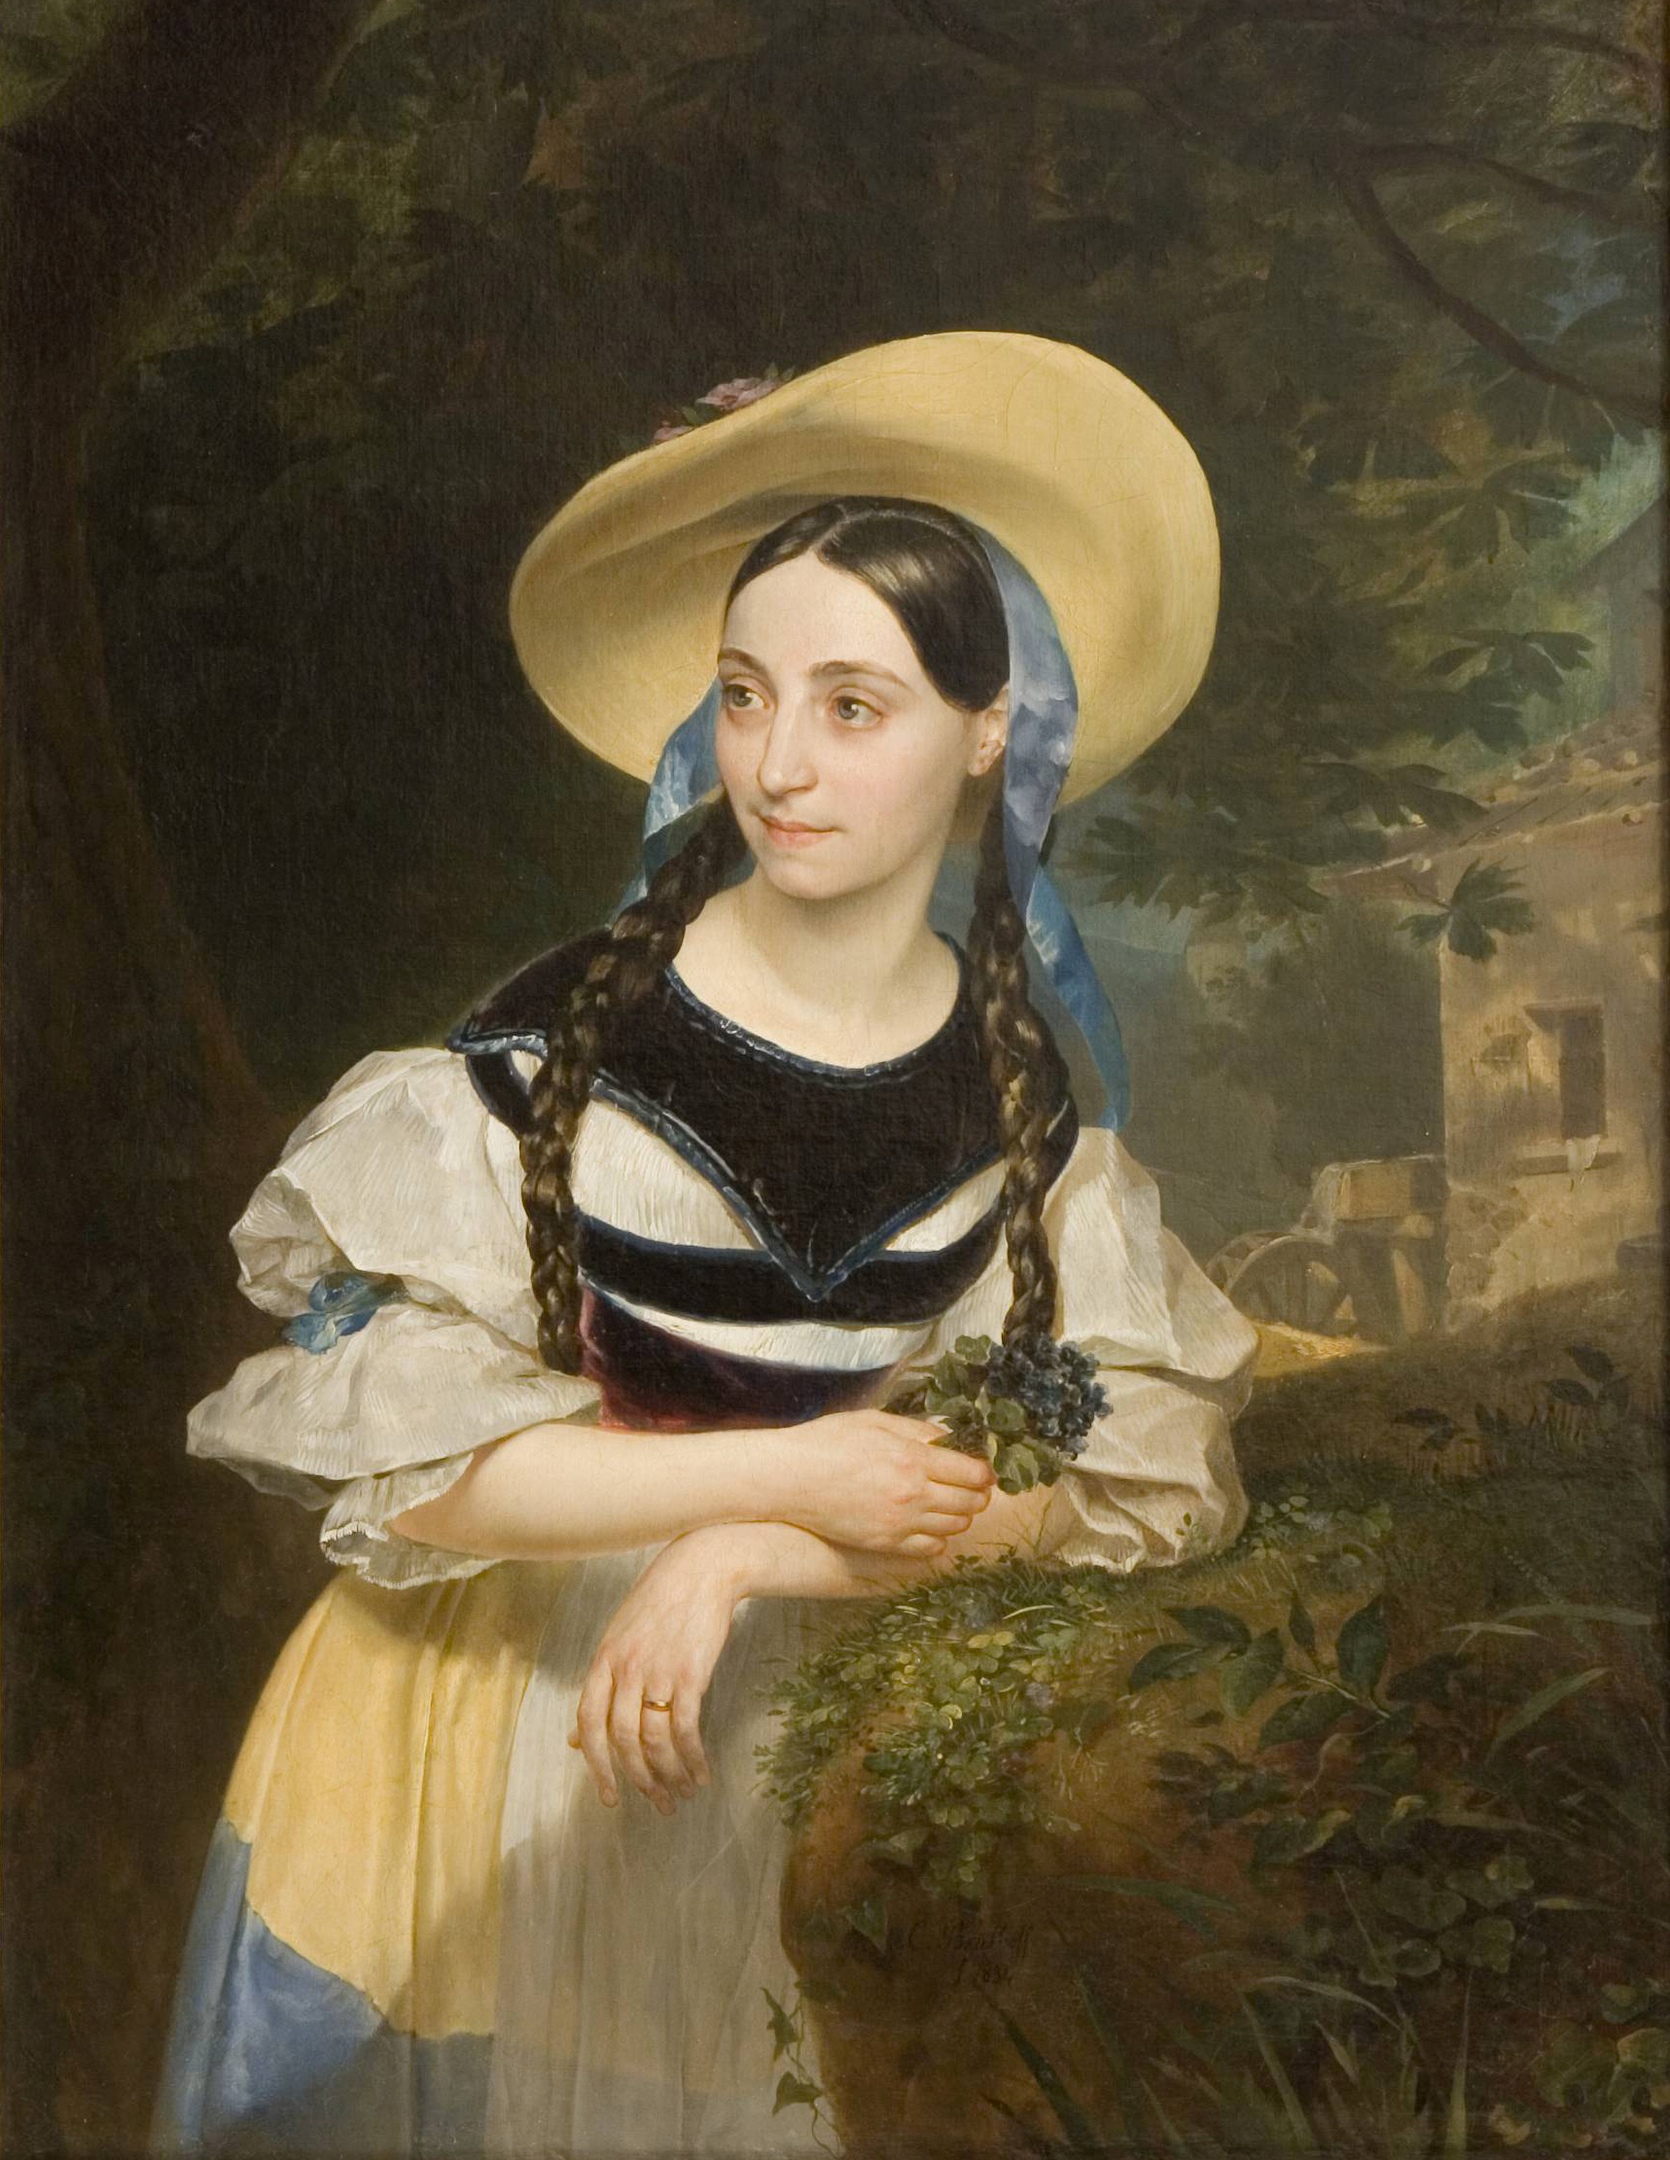 Retrato de Fanny Persiani-Tacchinardi como Amina by Karl Bryullov - 1834 